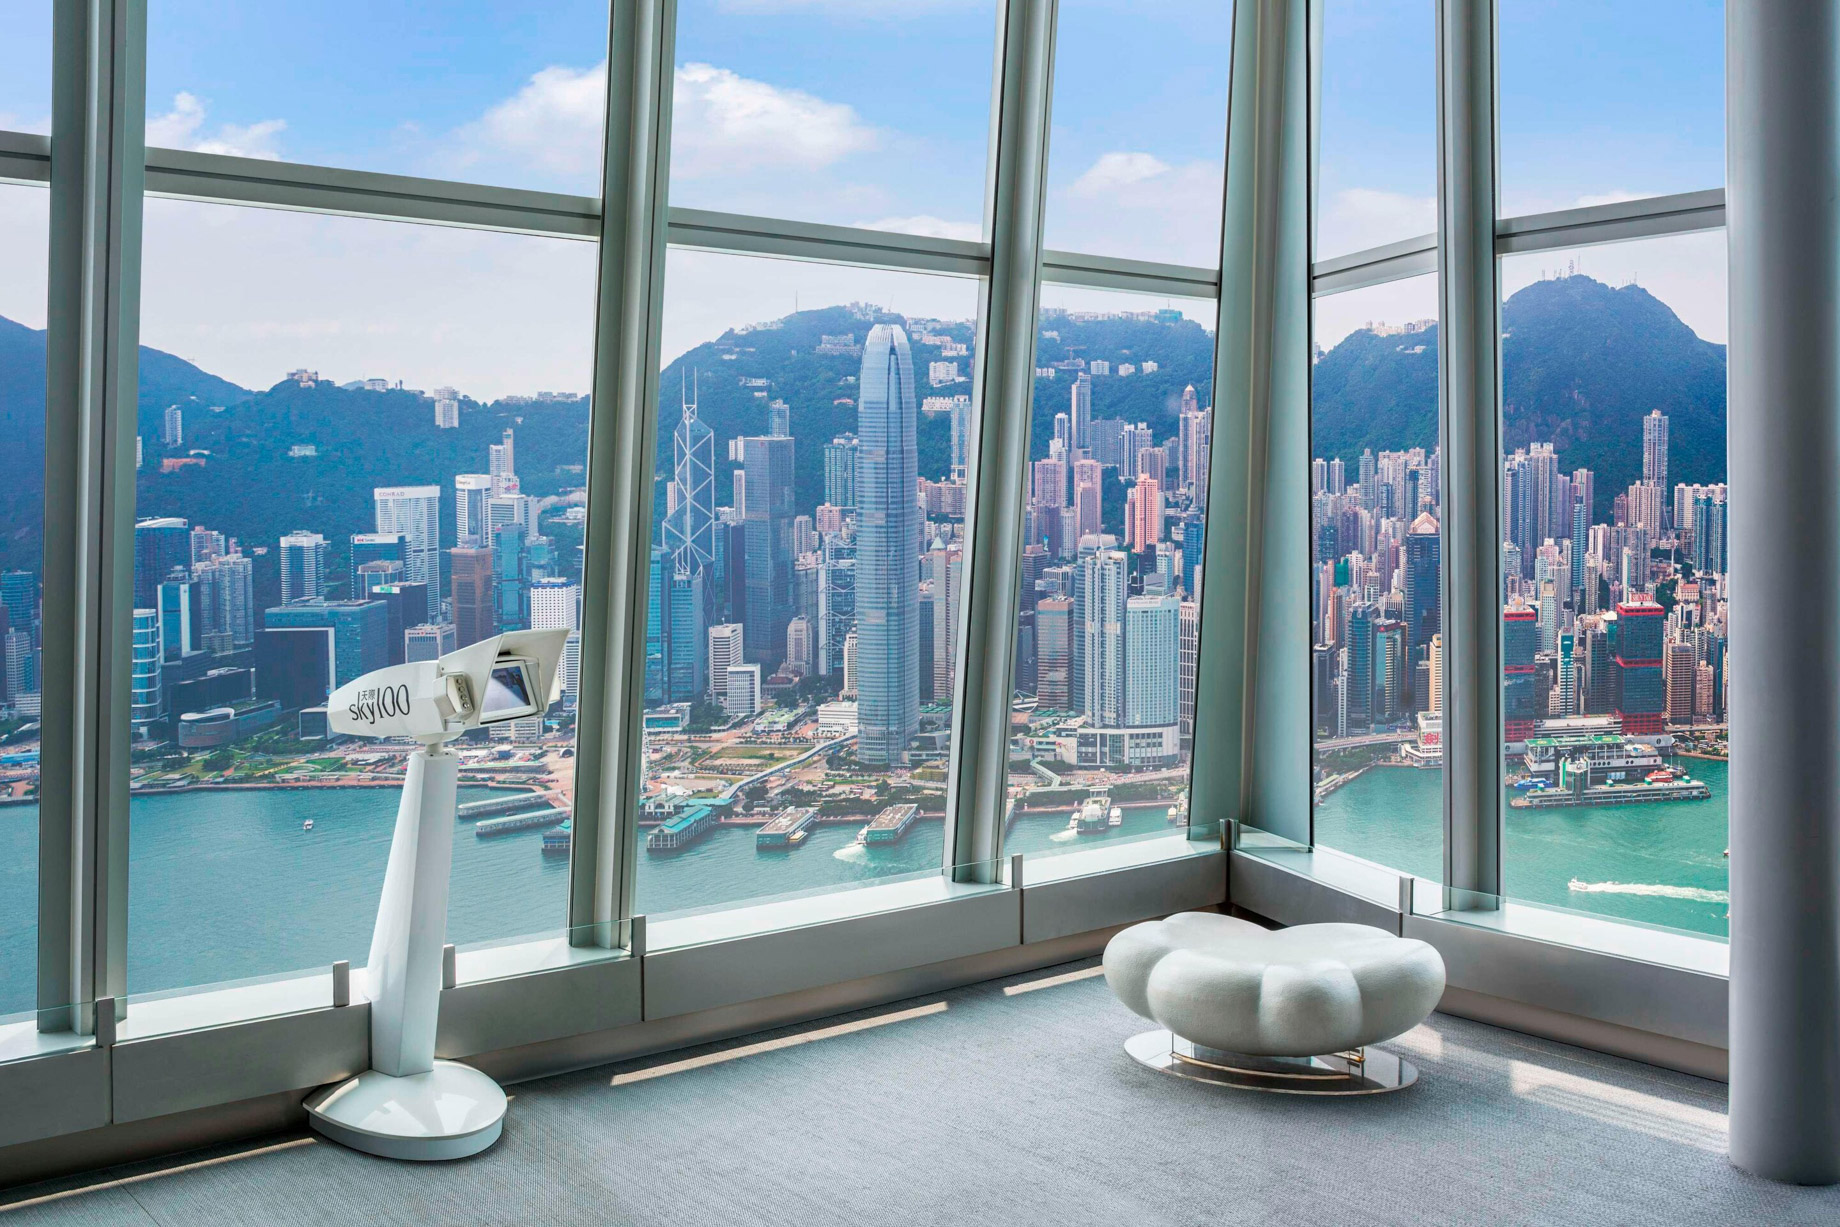 W Hong Kong Hotel – Hong Kong – Sky100 Observation Deck